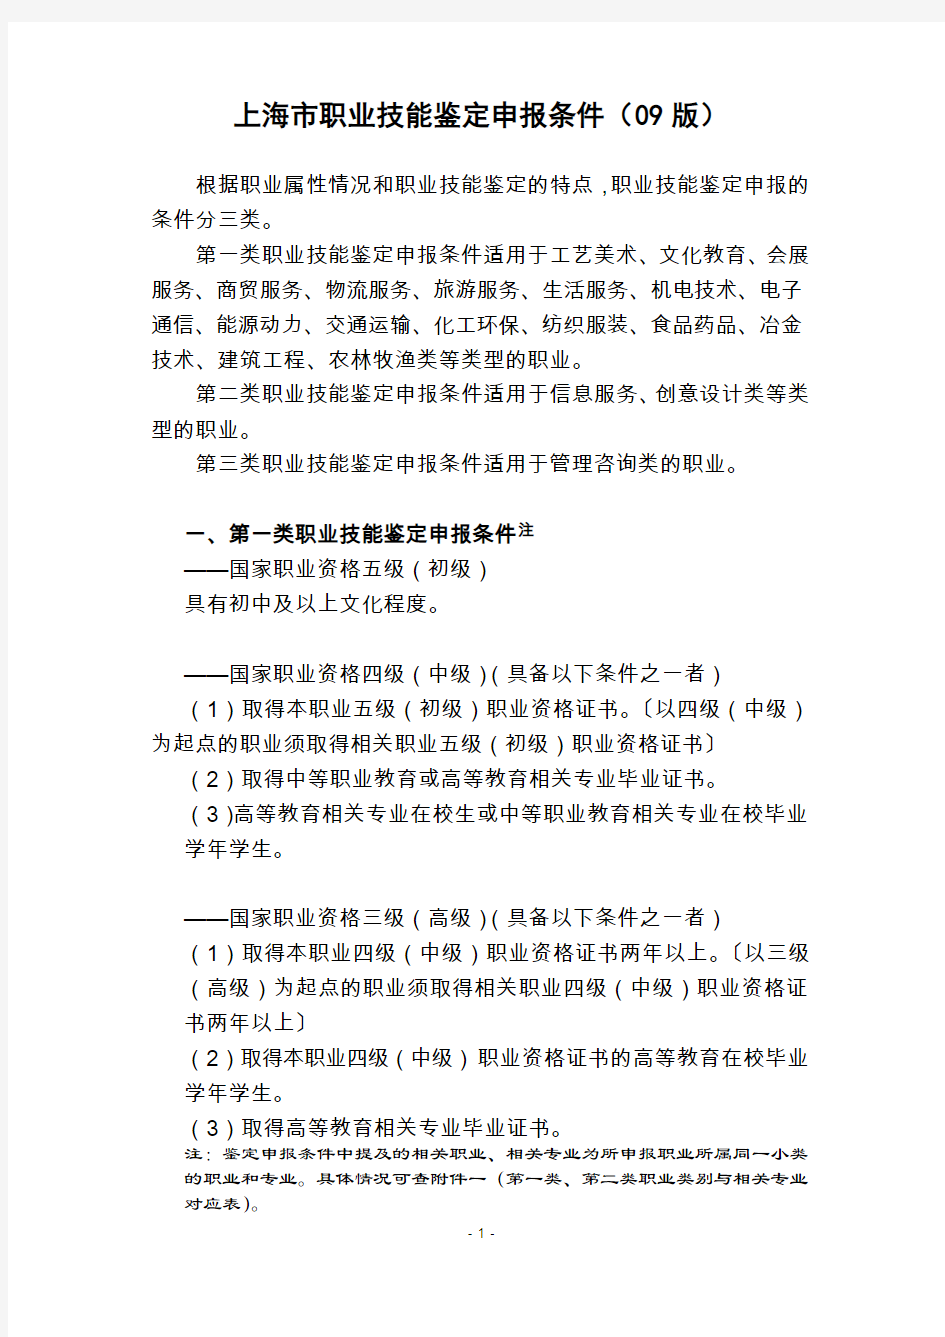 上海市职业技能鉴定申报条件(09版)